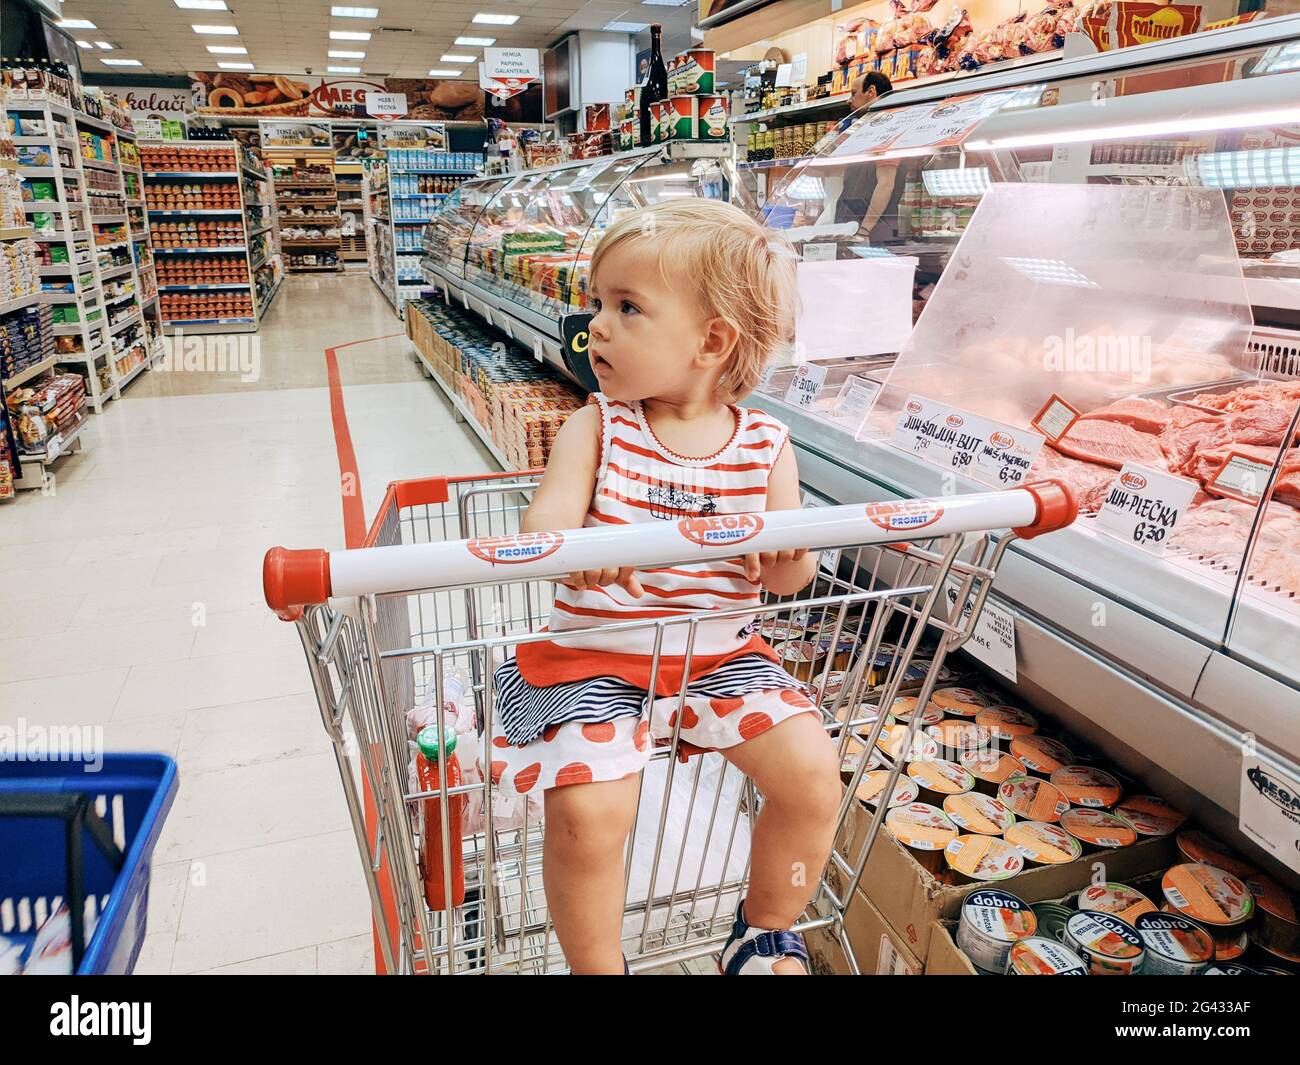 Budva, Montenegro - 10. juni 2020: Ein einjähriges Mädchen sitzt in einem Supermarkt-Trolley in der Fleischabteilung. Stockfoto